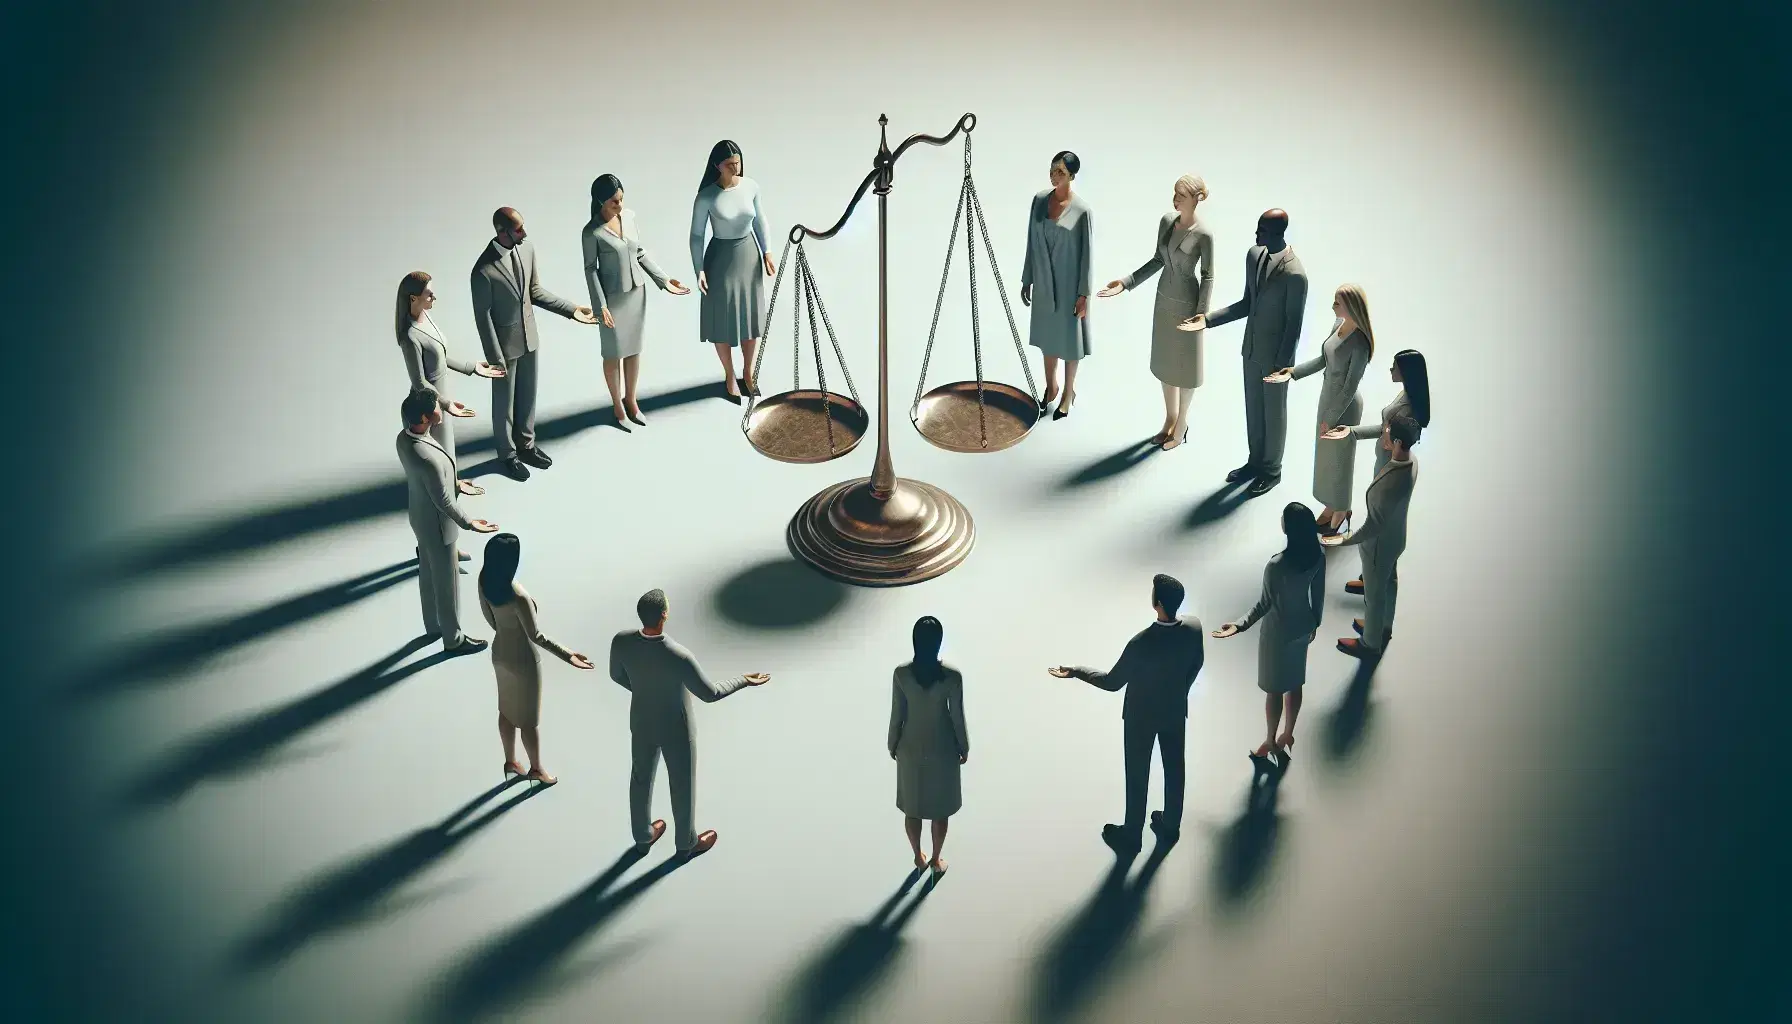 Grupo diverso de profesionales en semi-círculo con manos extendidas hacia balanza de justicia vacía, simbolizando inclusión y equidad.